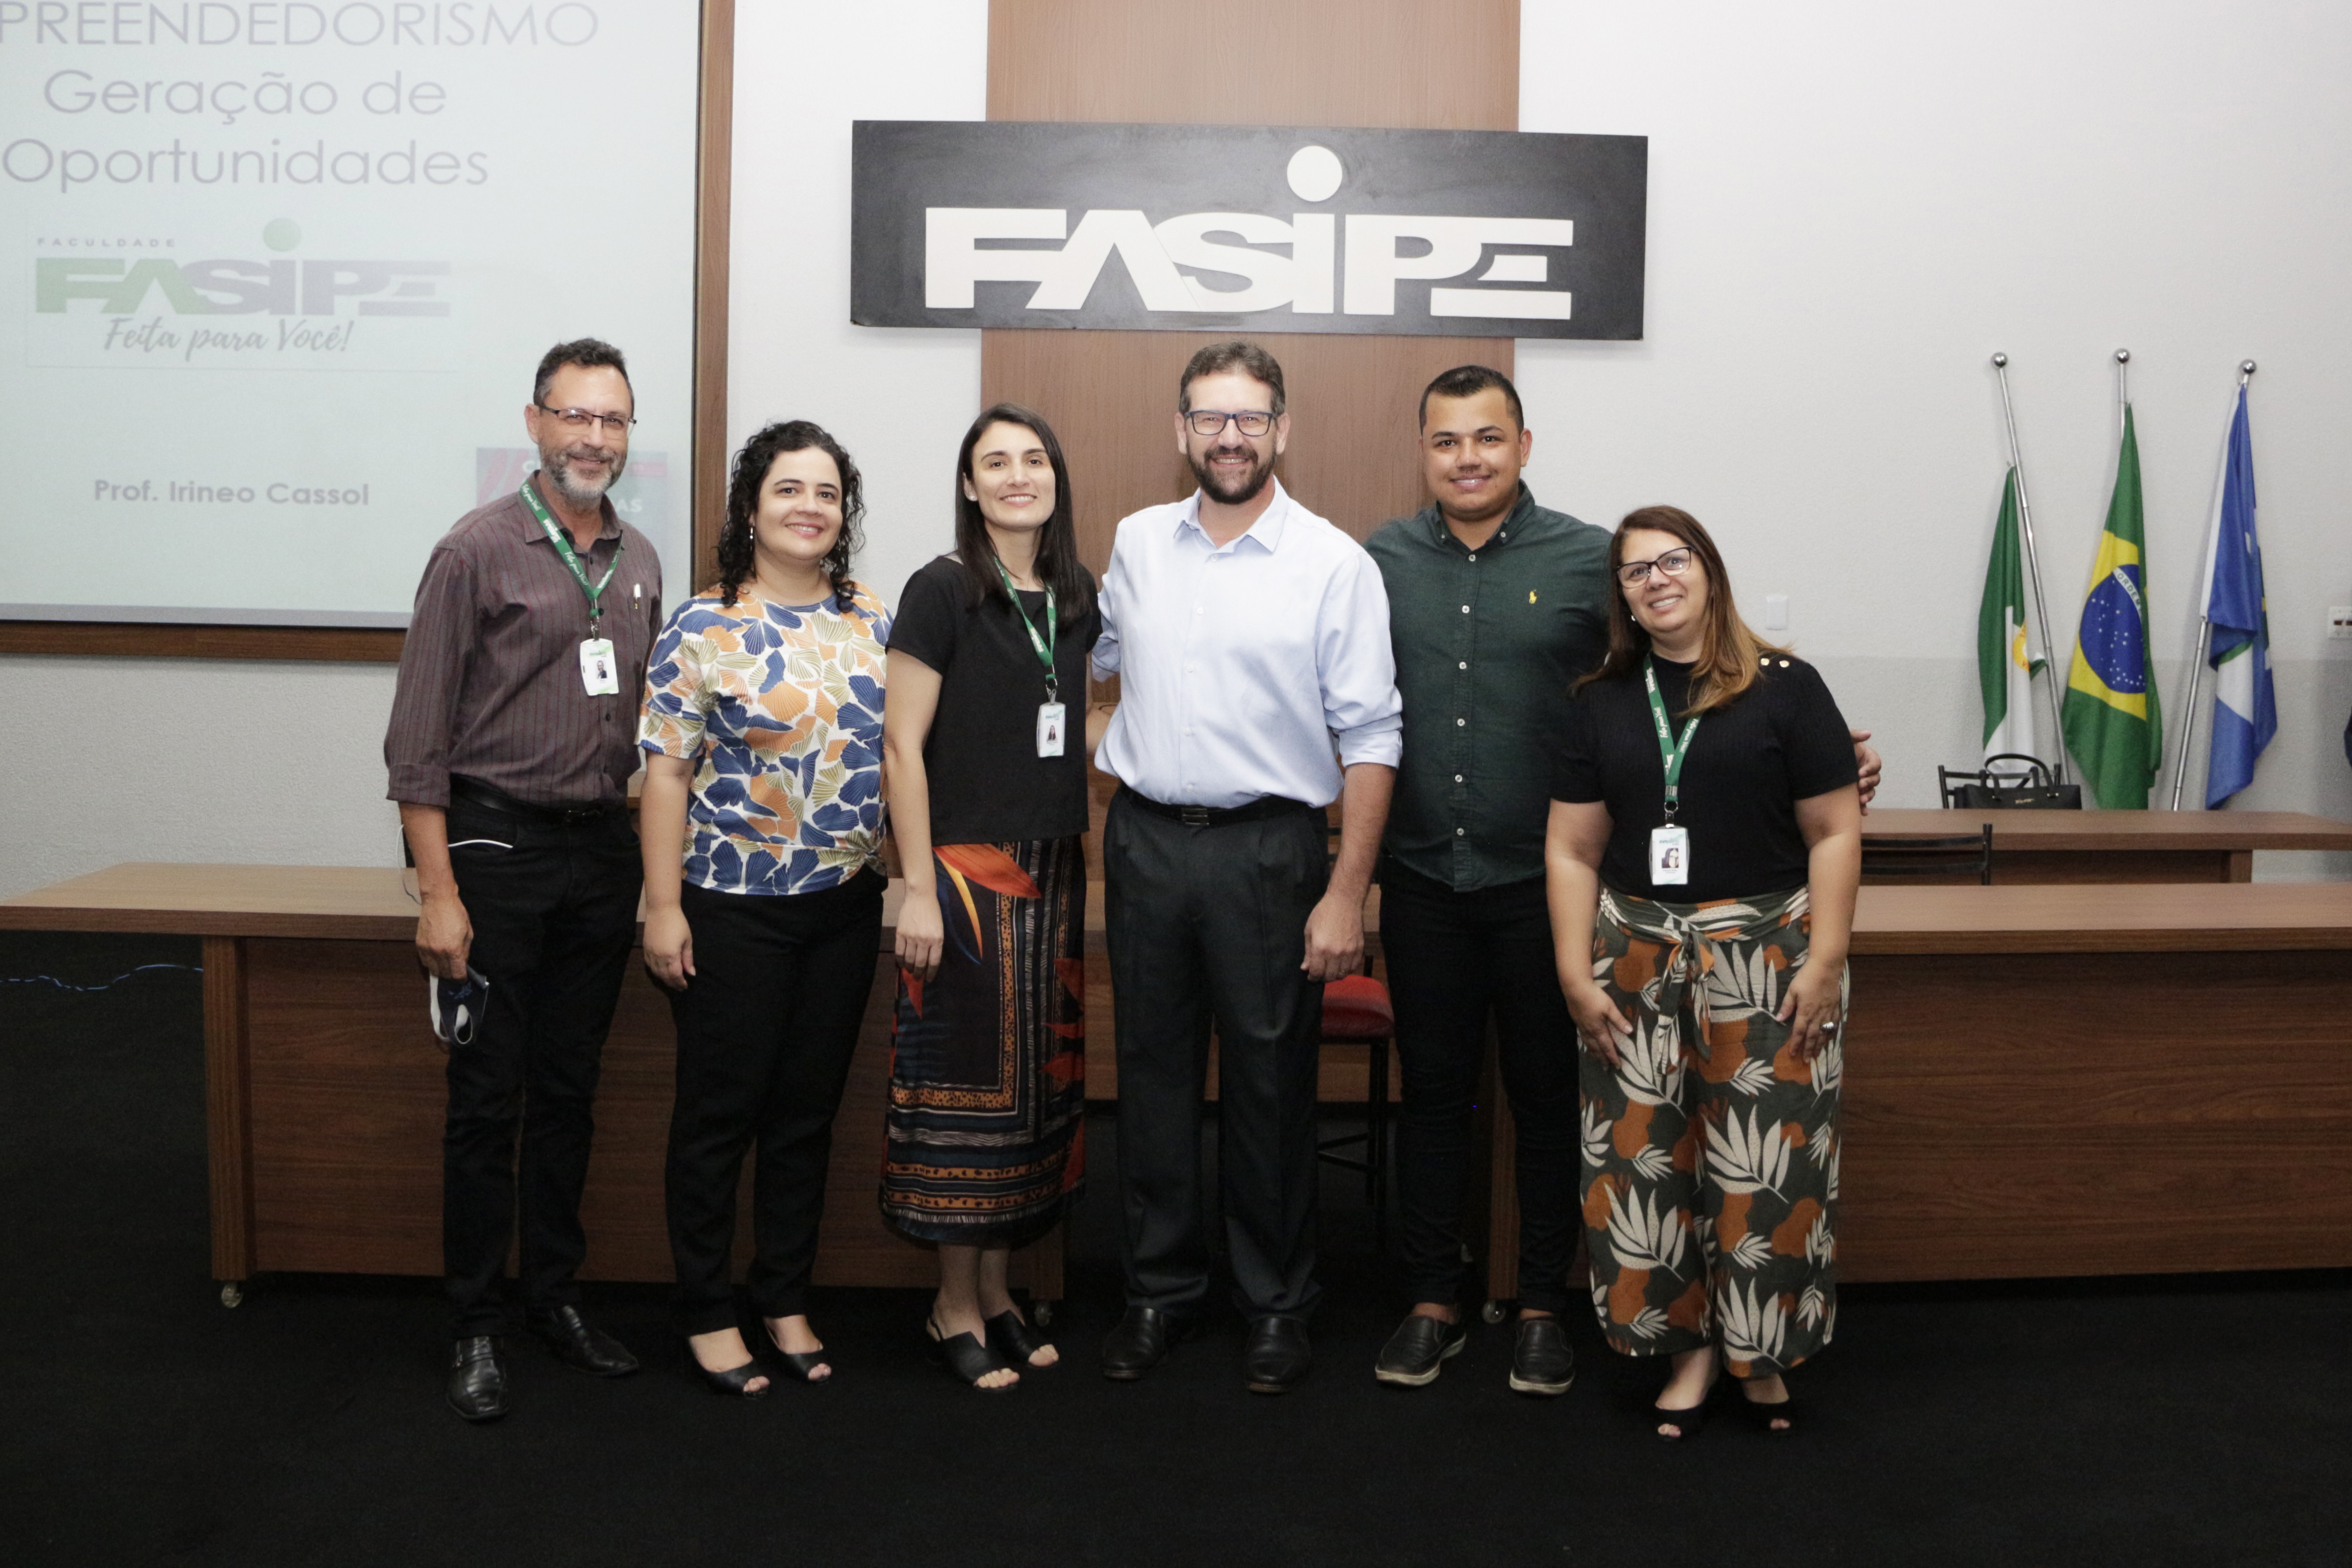 FASIPE CUIABÁ promoveu o II Congresso de Saúde no mês de junho